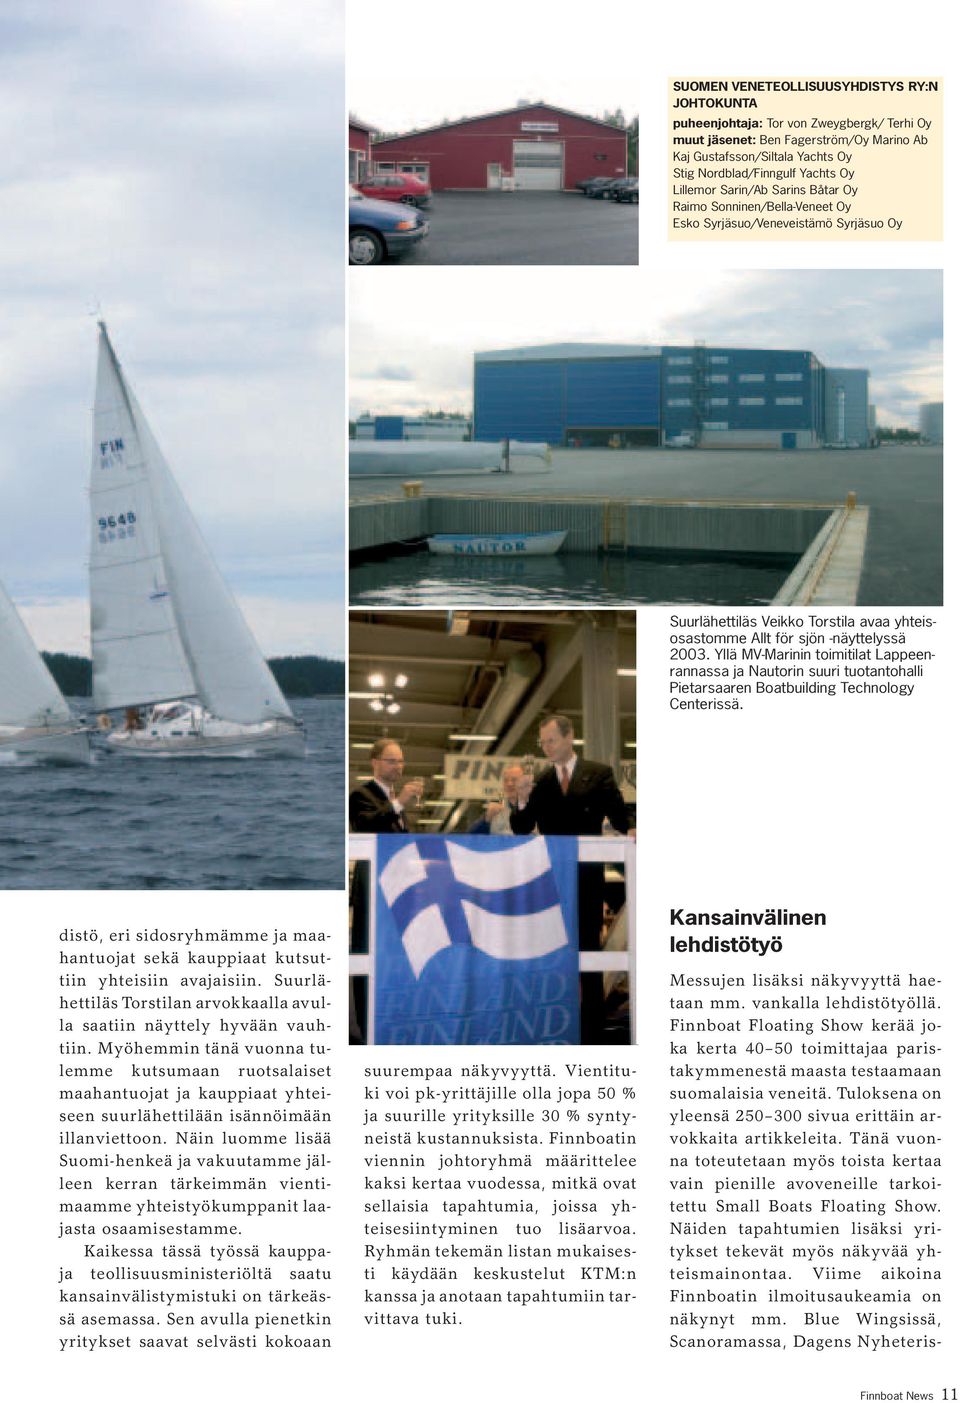 Yllä MV-Marinin toimitilat Lappeenrannassa ja Nautorin suuri tuotantohalli Pietarsaaren Boatbuilding Technology Centerissä.